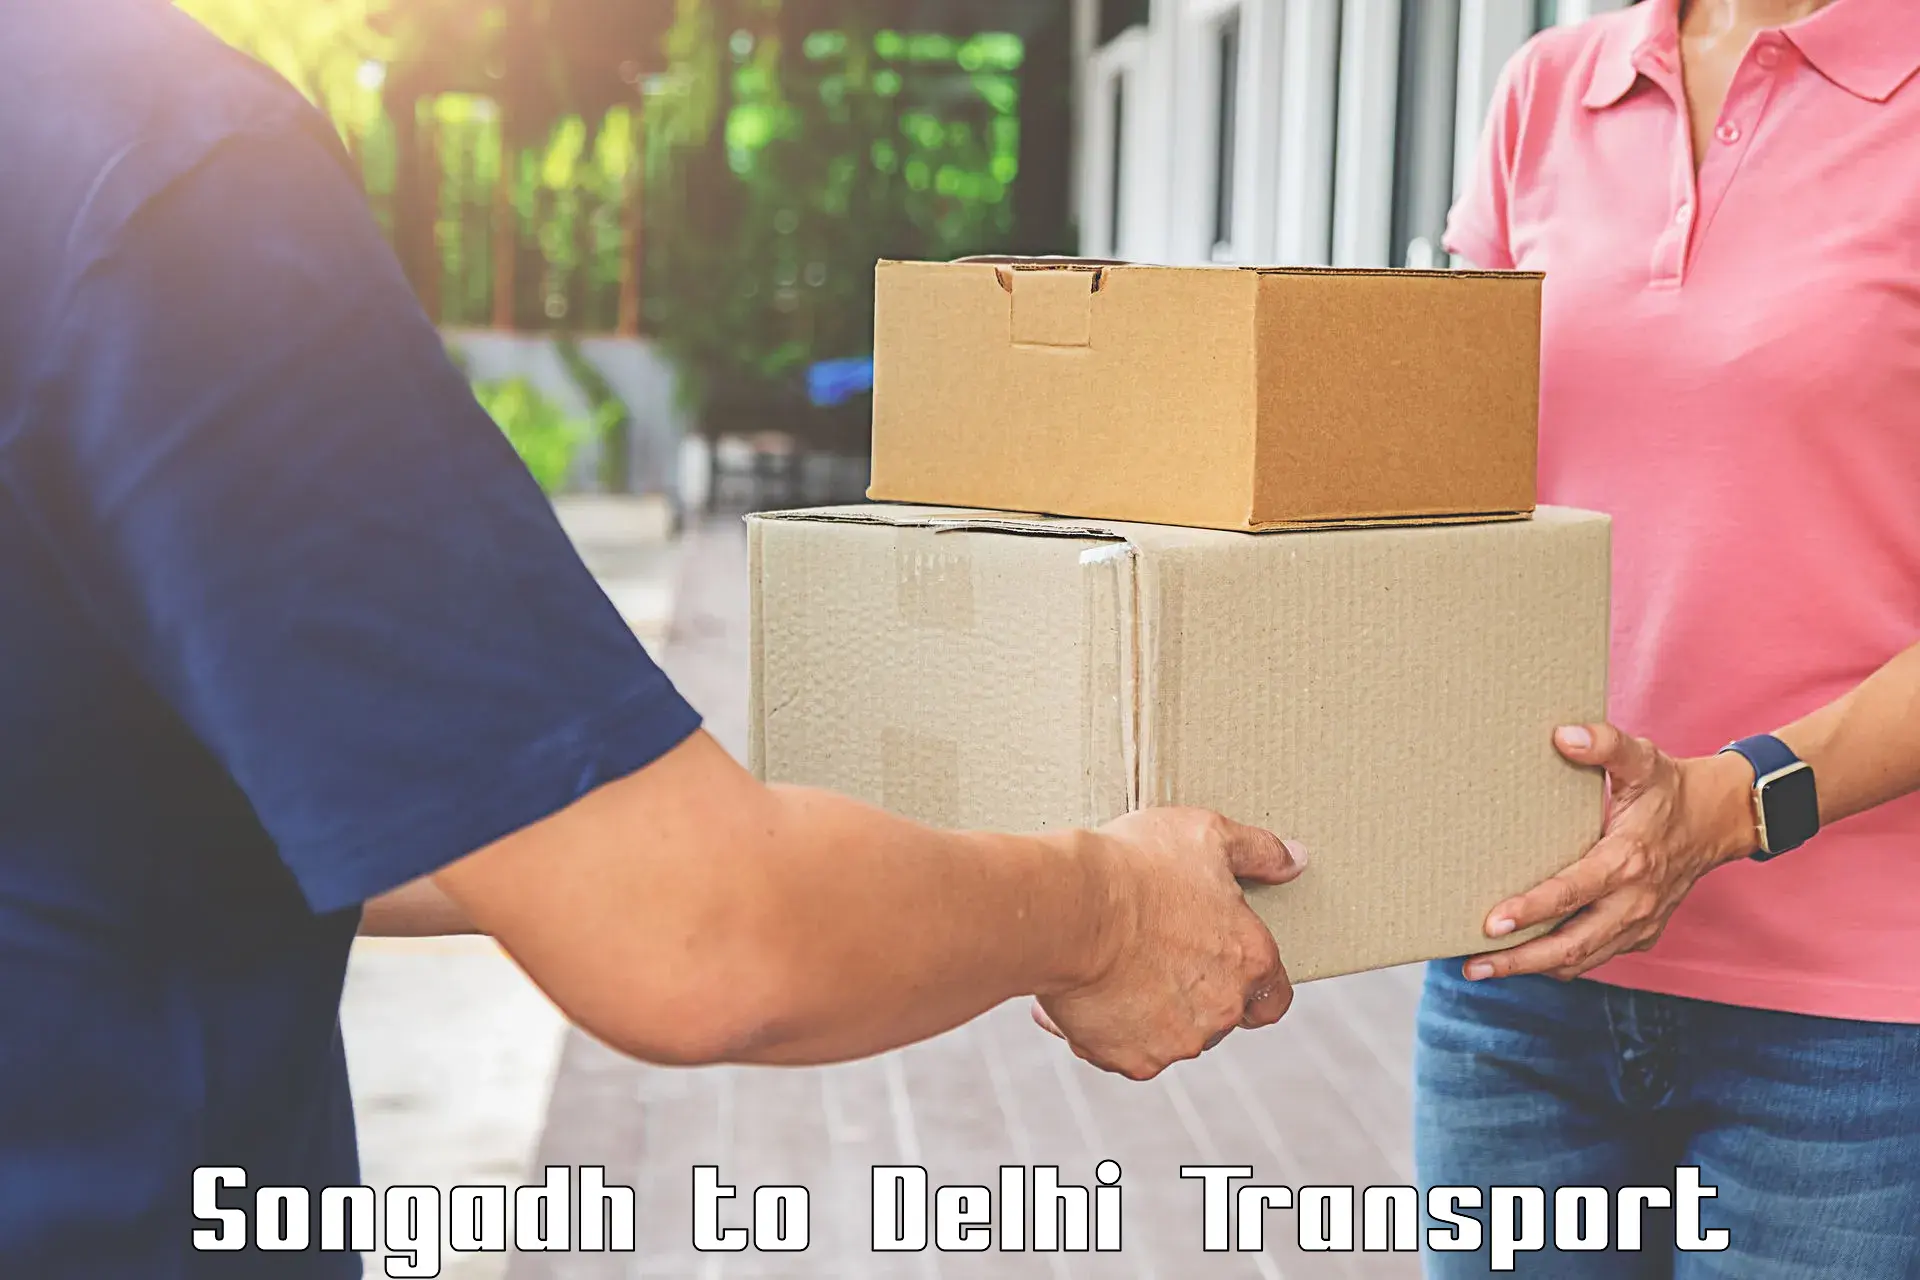 Land transport services Songadh to Jamia Millia Islamia New Delhi